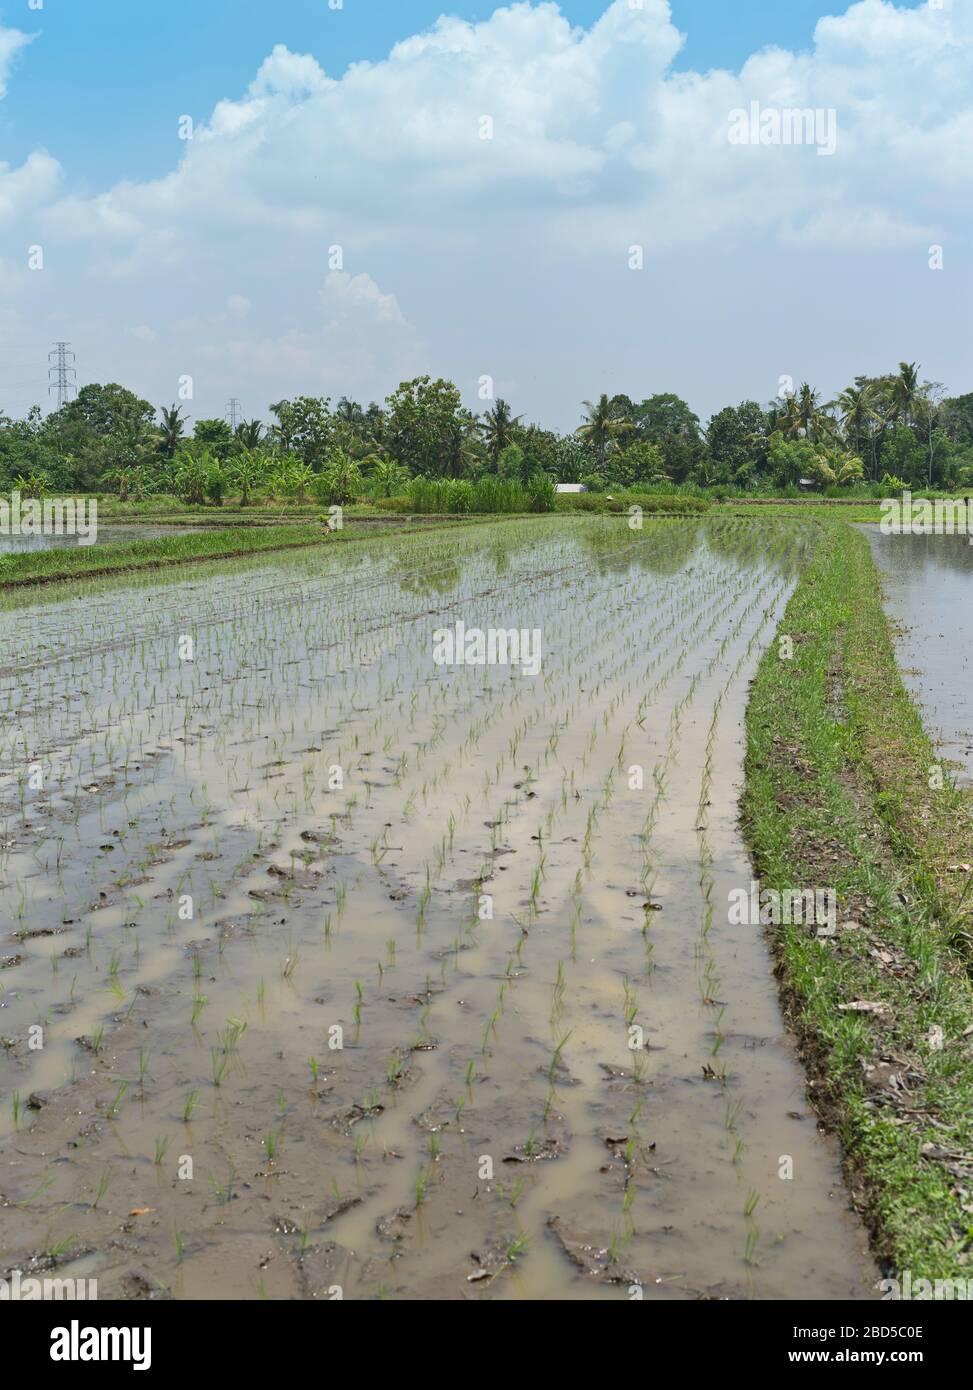 dh campi balinesi piantato riso BALI INDONESIA in campo umido risaia coltivare paddy terreni paddy asia colture indonesiane Foto Stock